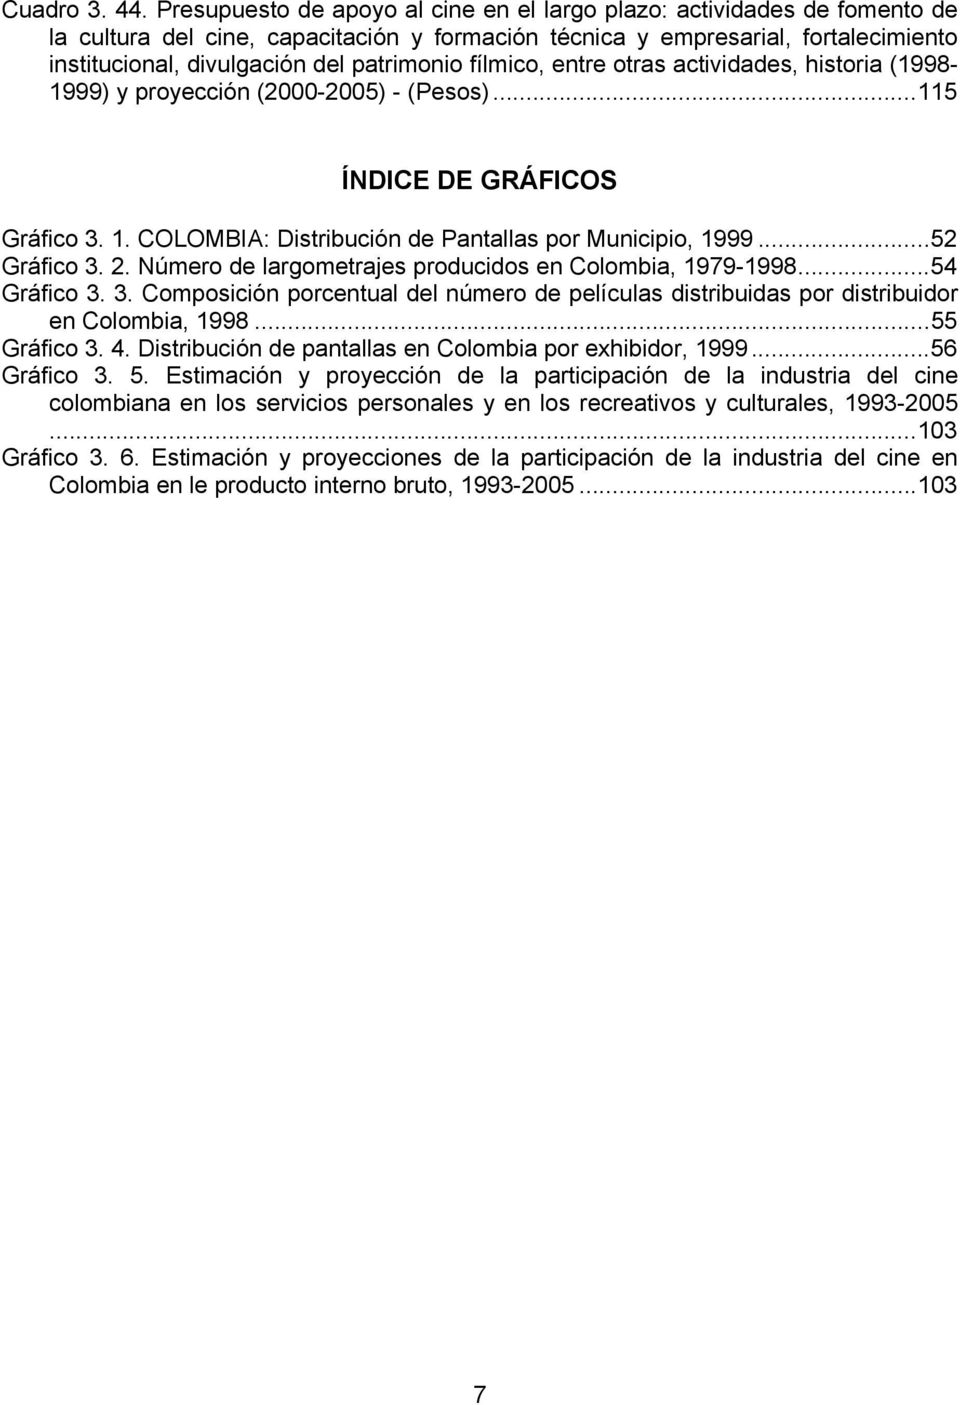 patrimonio fílmico, entre otras actividades, historia (1998-1999) y proyección (2000-2005) - (Pesos)...115 ÍNDICE DE GRÁFICOS Gráfico 3. 1. COLOMBIA: Distribución de Pantallas por Municipio, 1999.